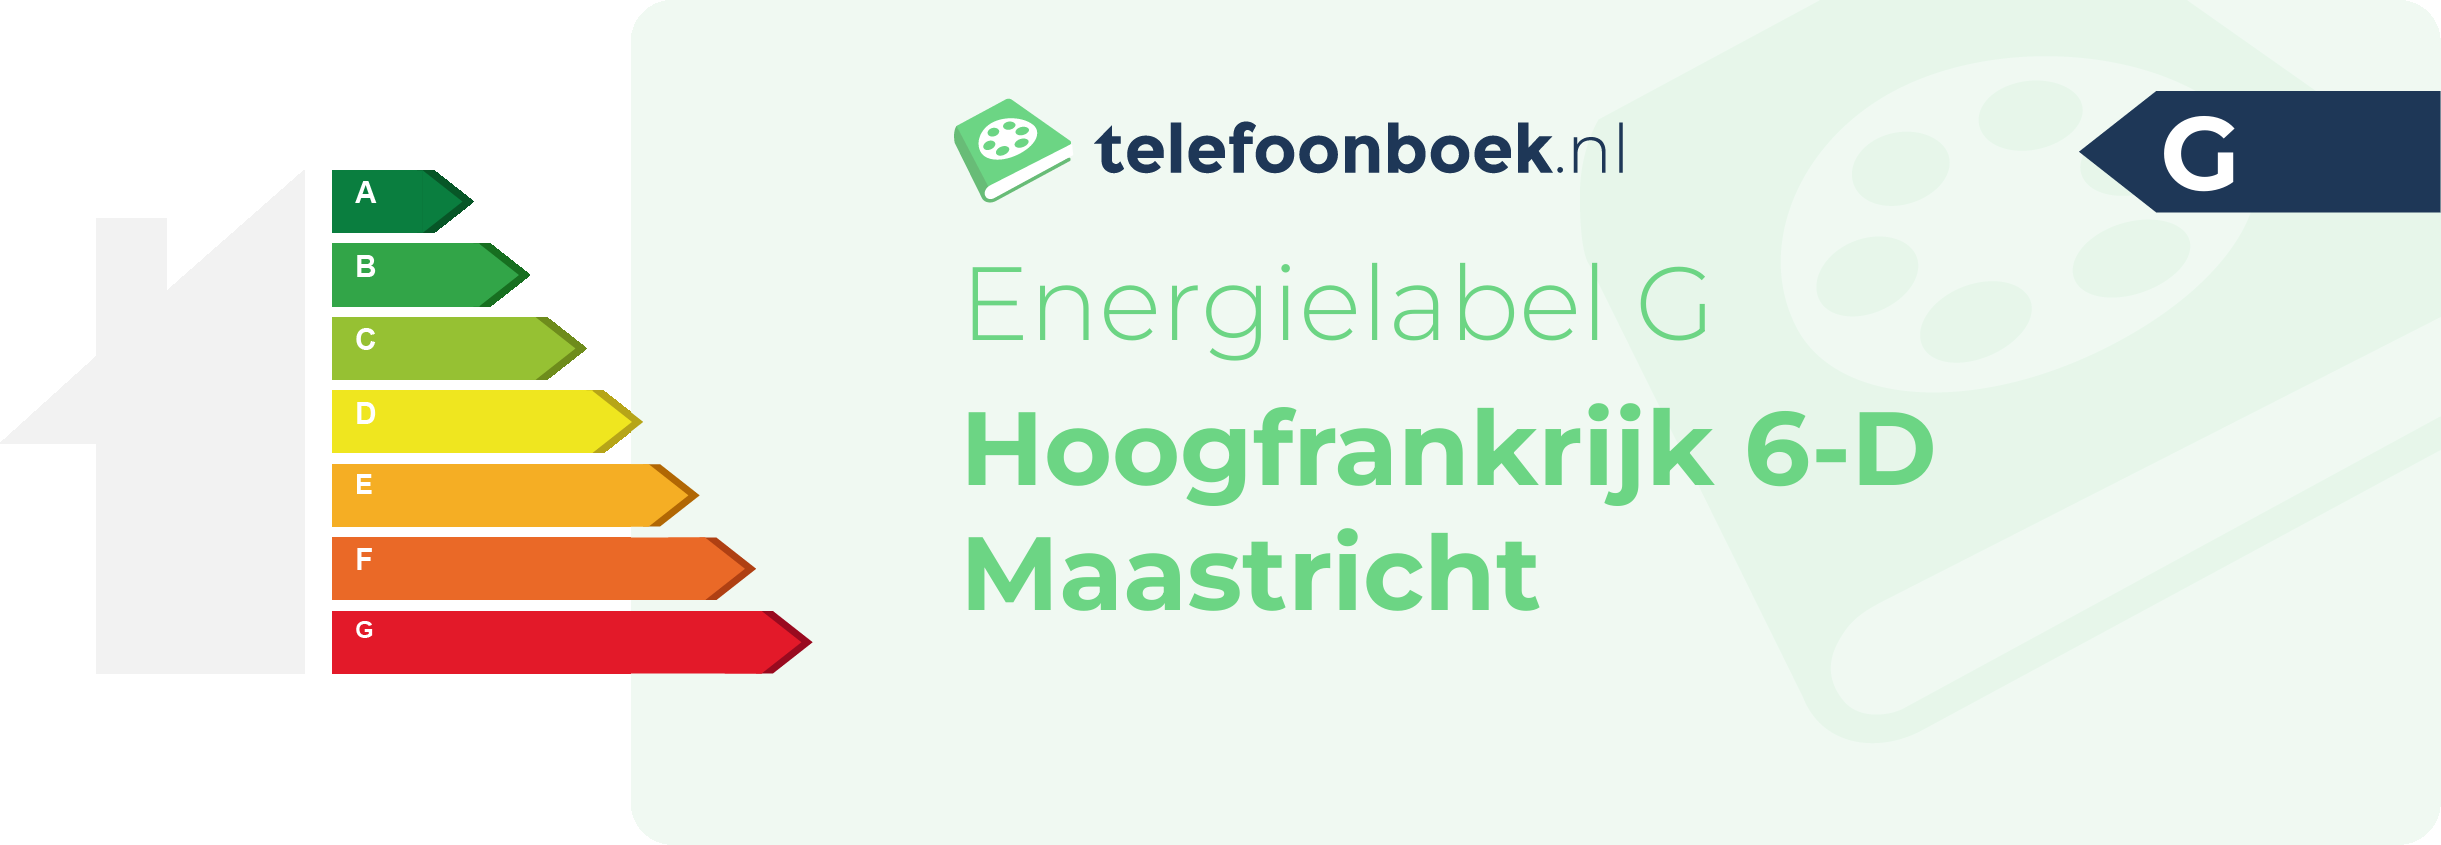 Energielabel Hoogfrankrijk 6-D Maastricht